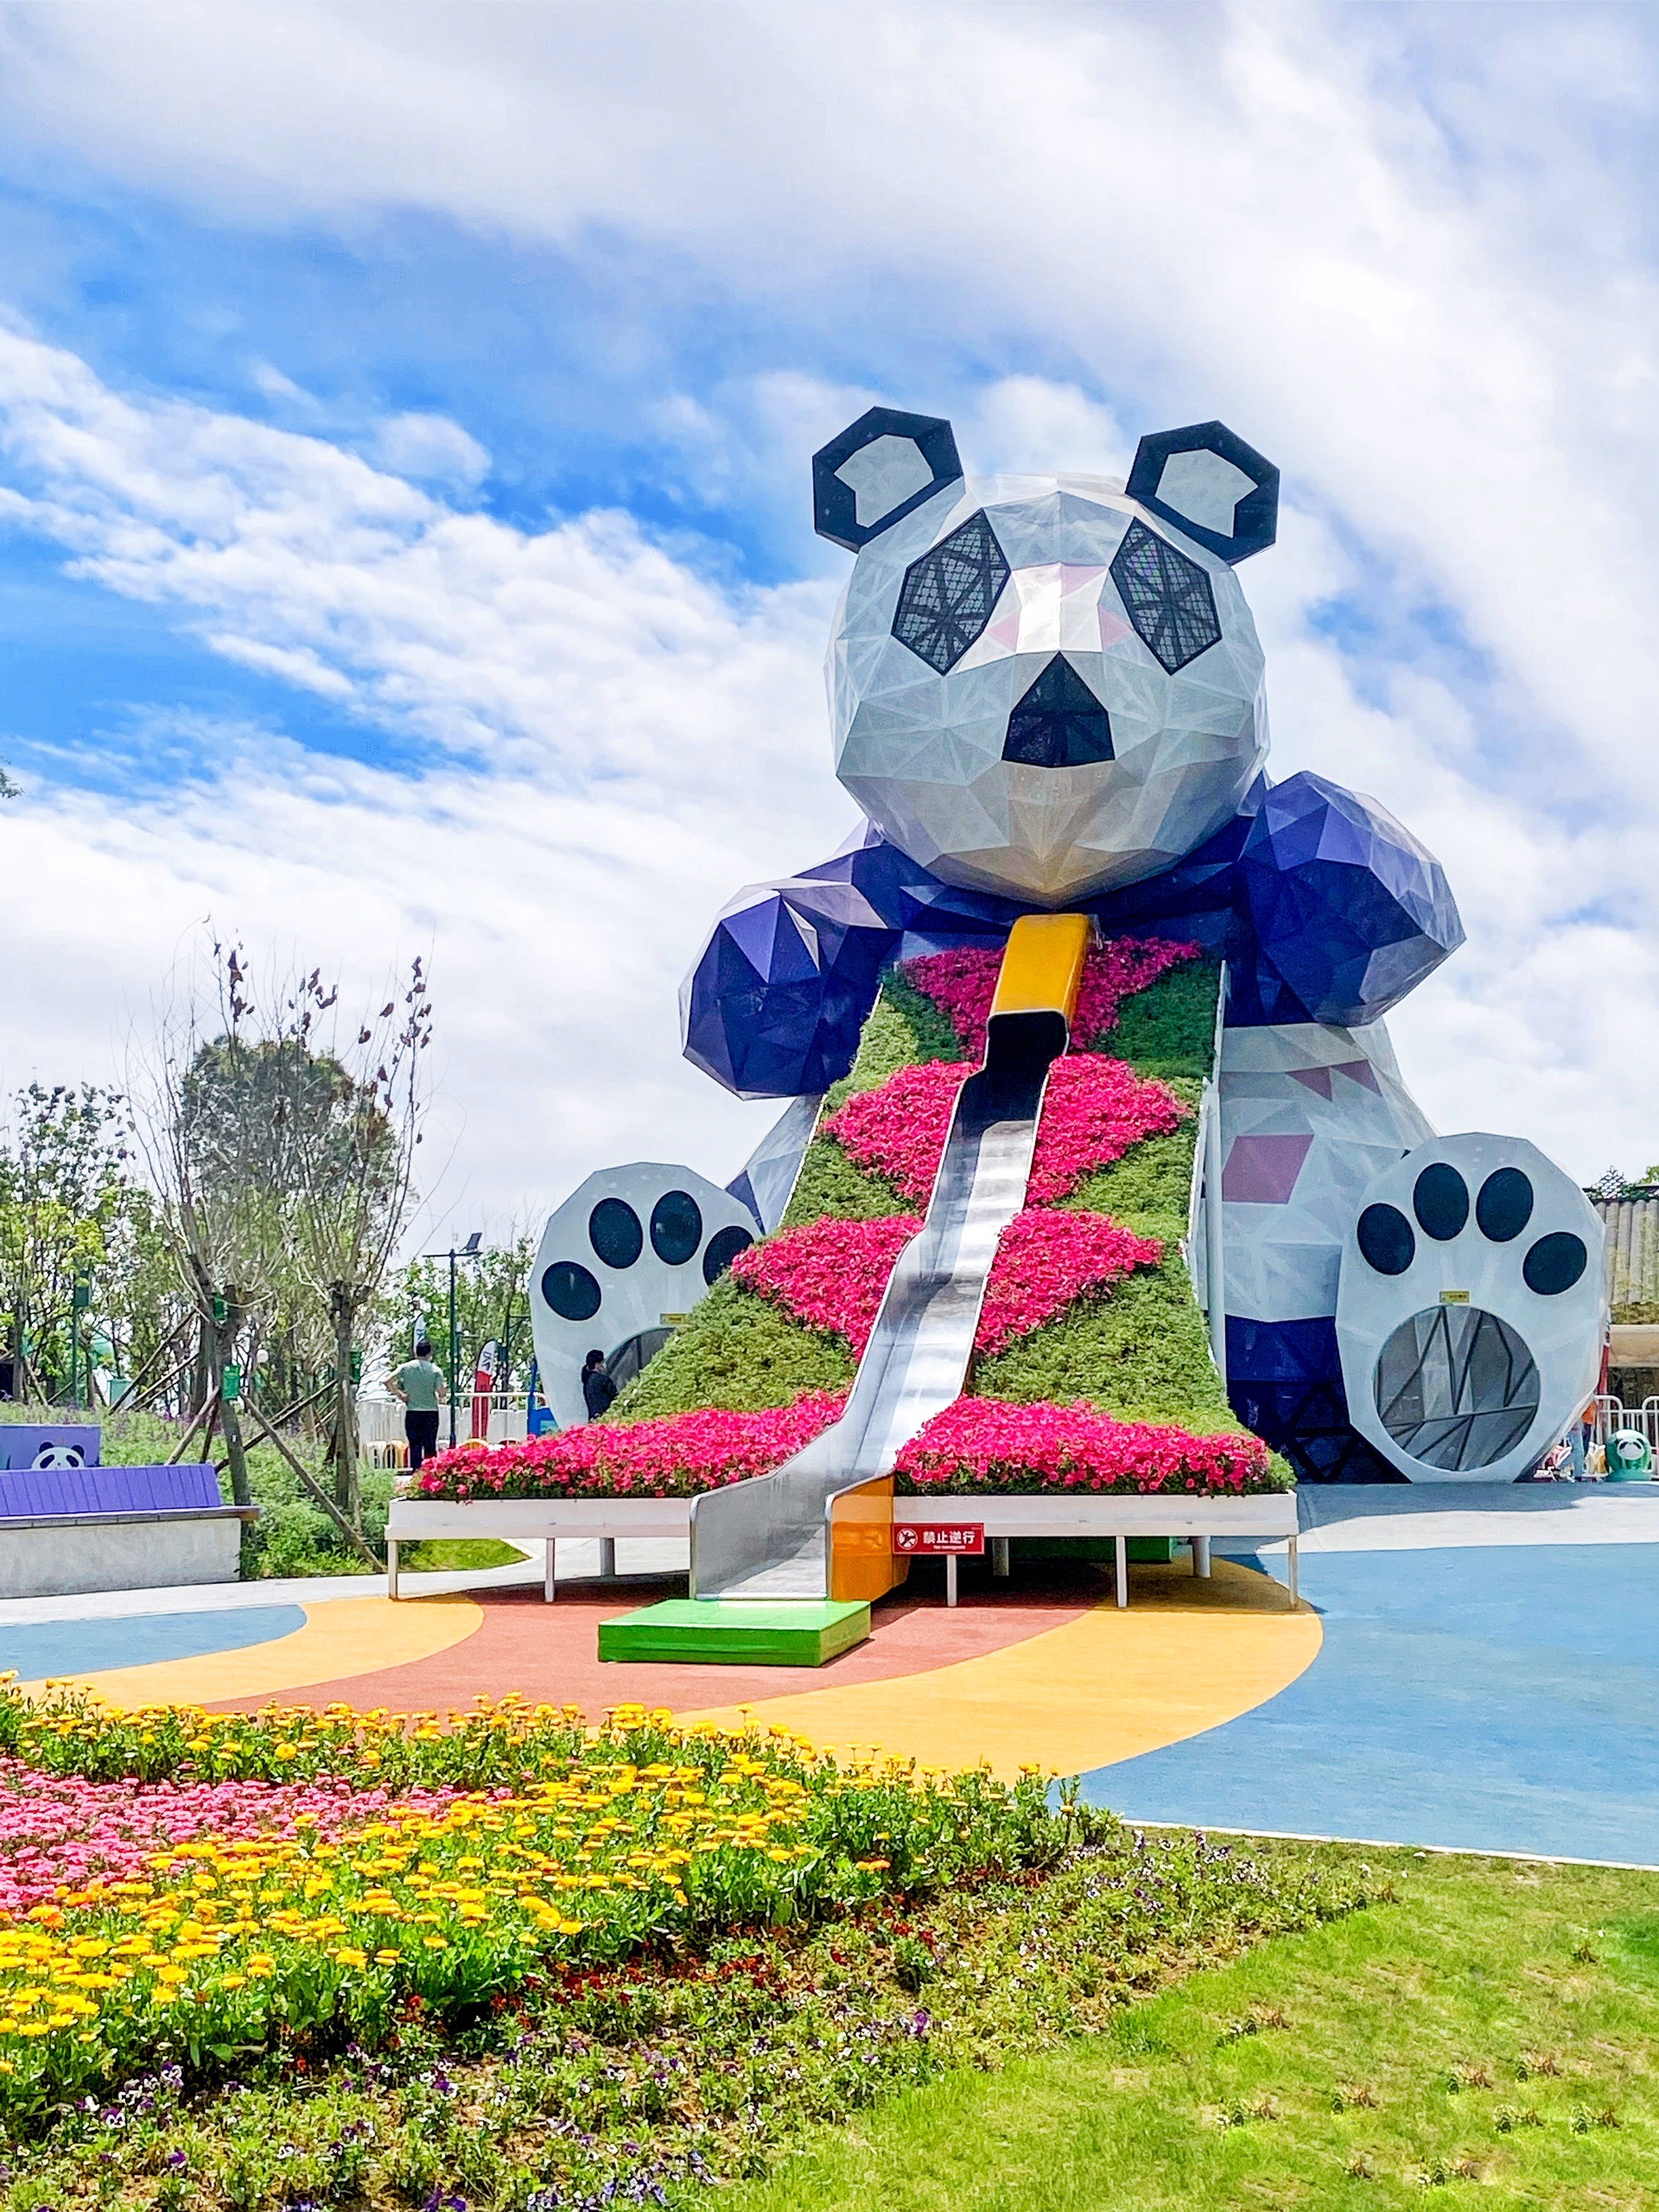 成都遛娃好去处——成都新晋熊猫元素乐园超萌的巨型“滚滚脸”龙泉驿欢乐田园